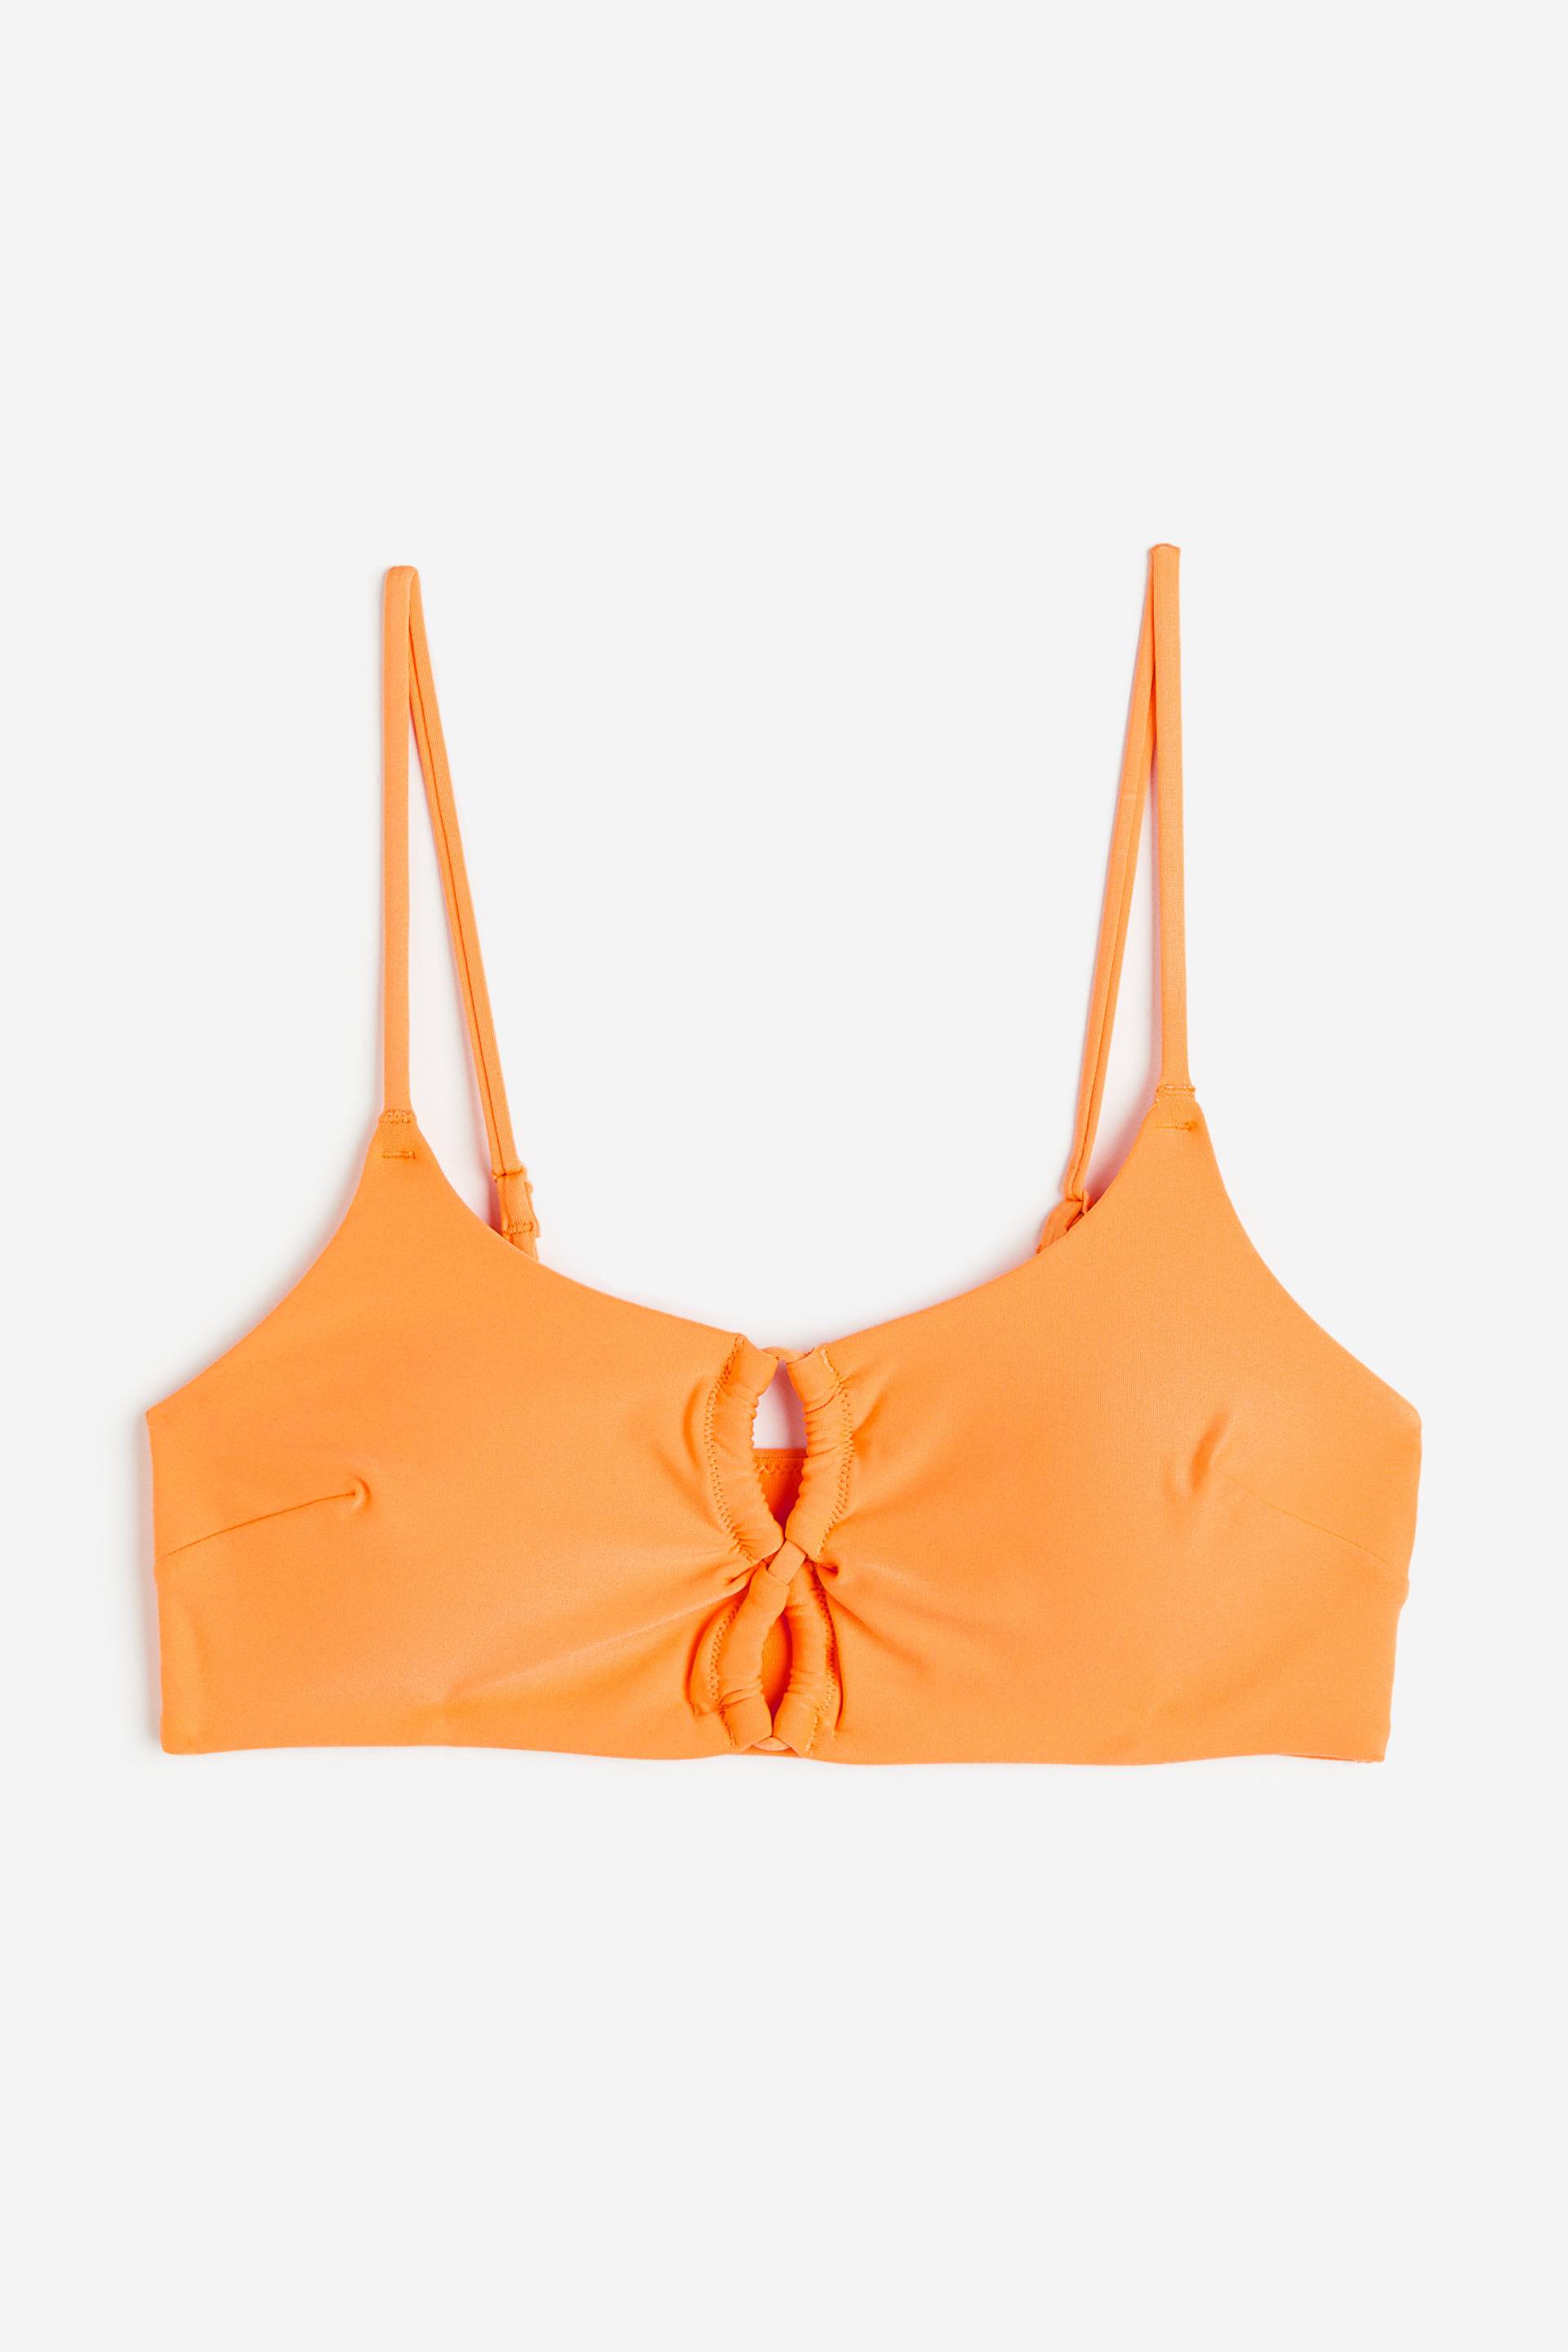 H&M Wattiertes Bikinitop Orange, Bikini-Oberteil in Größe 34 von H&M